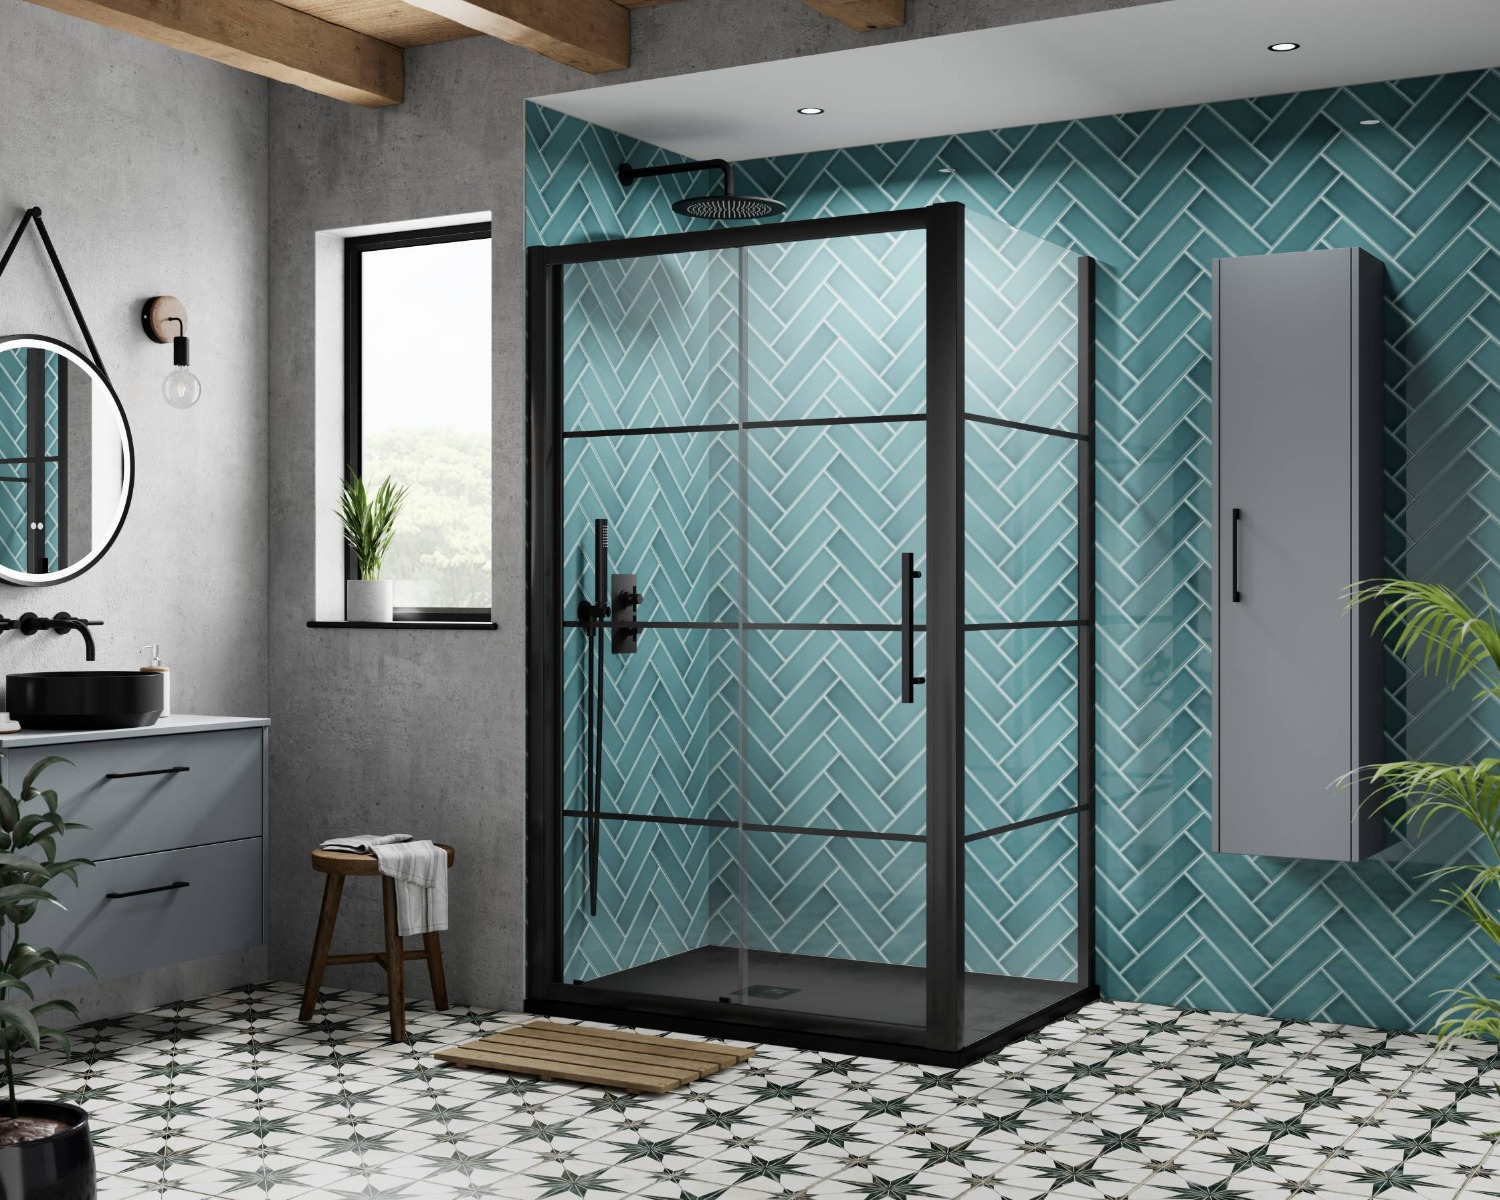 blue bathroom with tiles